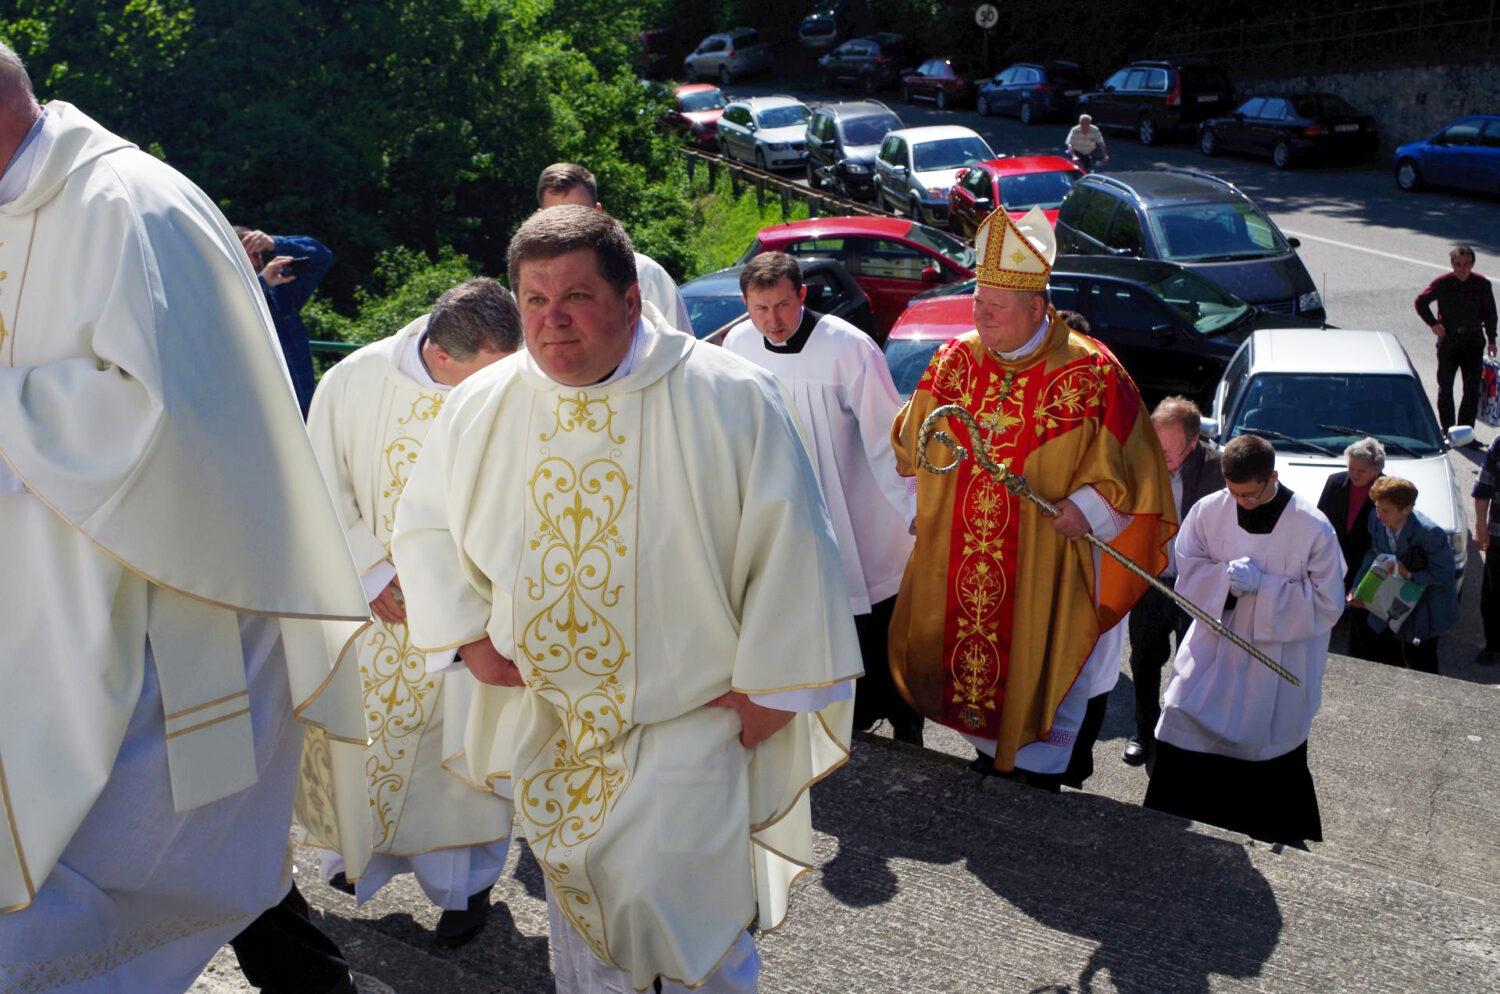 Biskup Peter Beňo: Evanjelium sa nedá šíriť so zachmúrenou tvárou